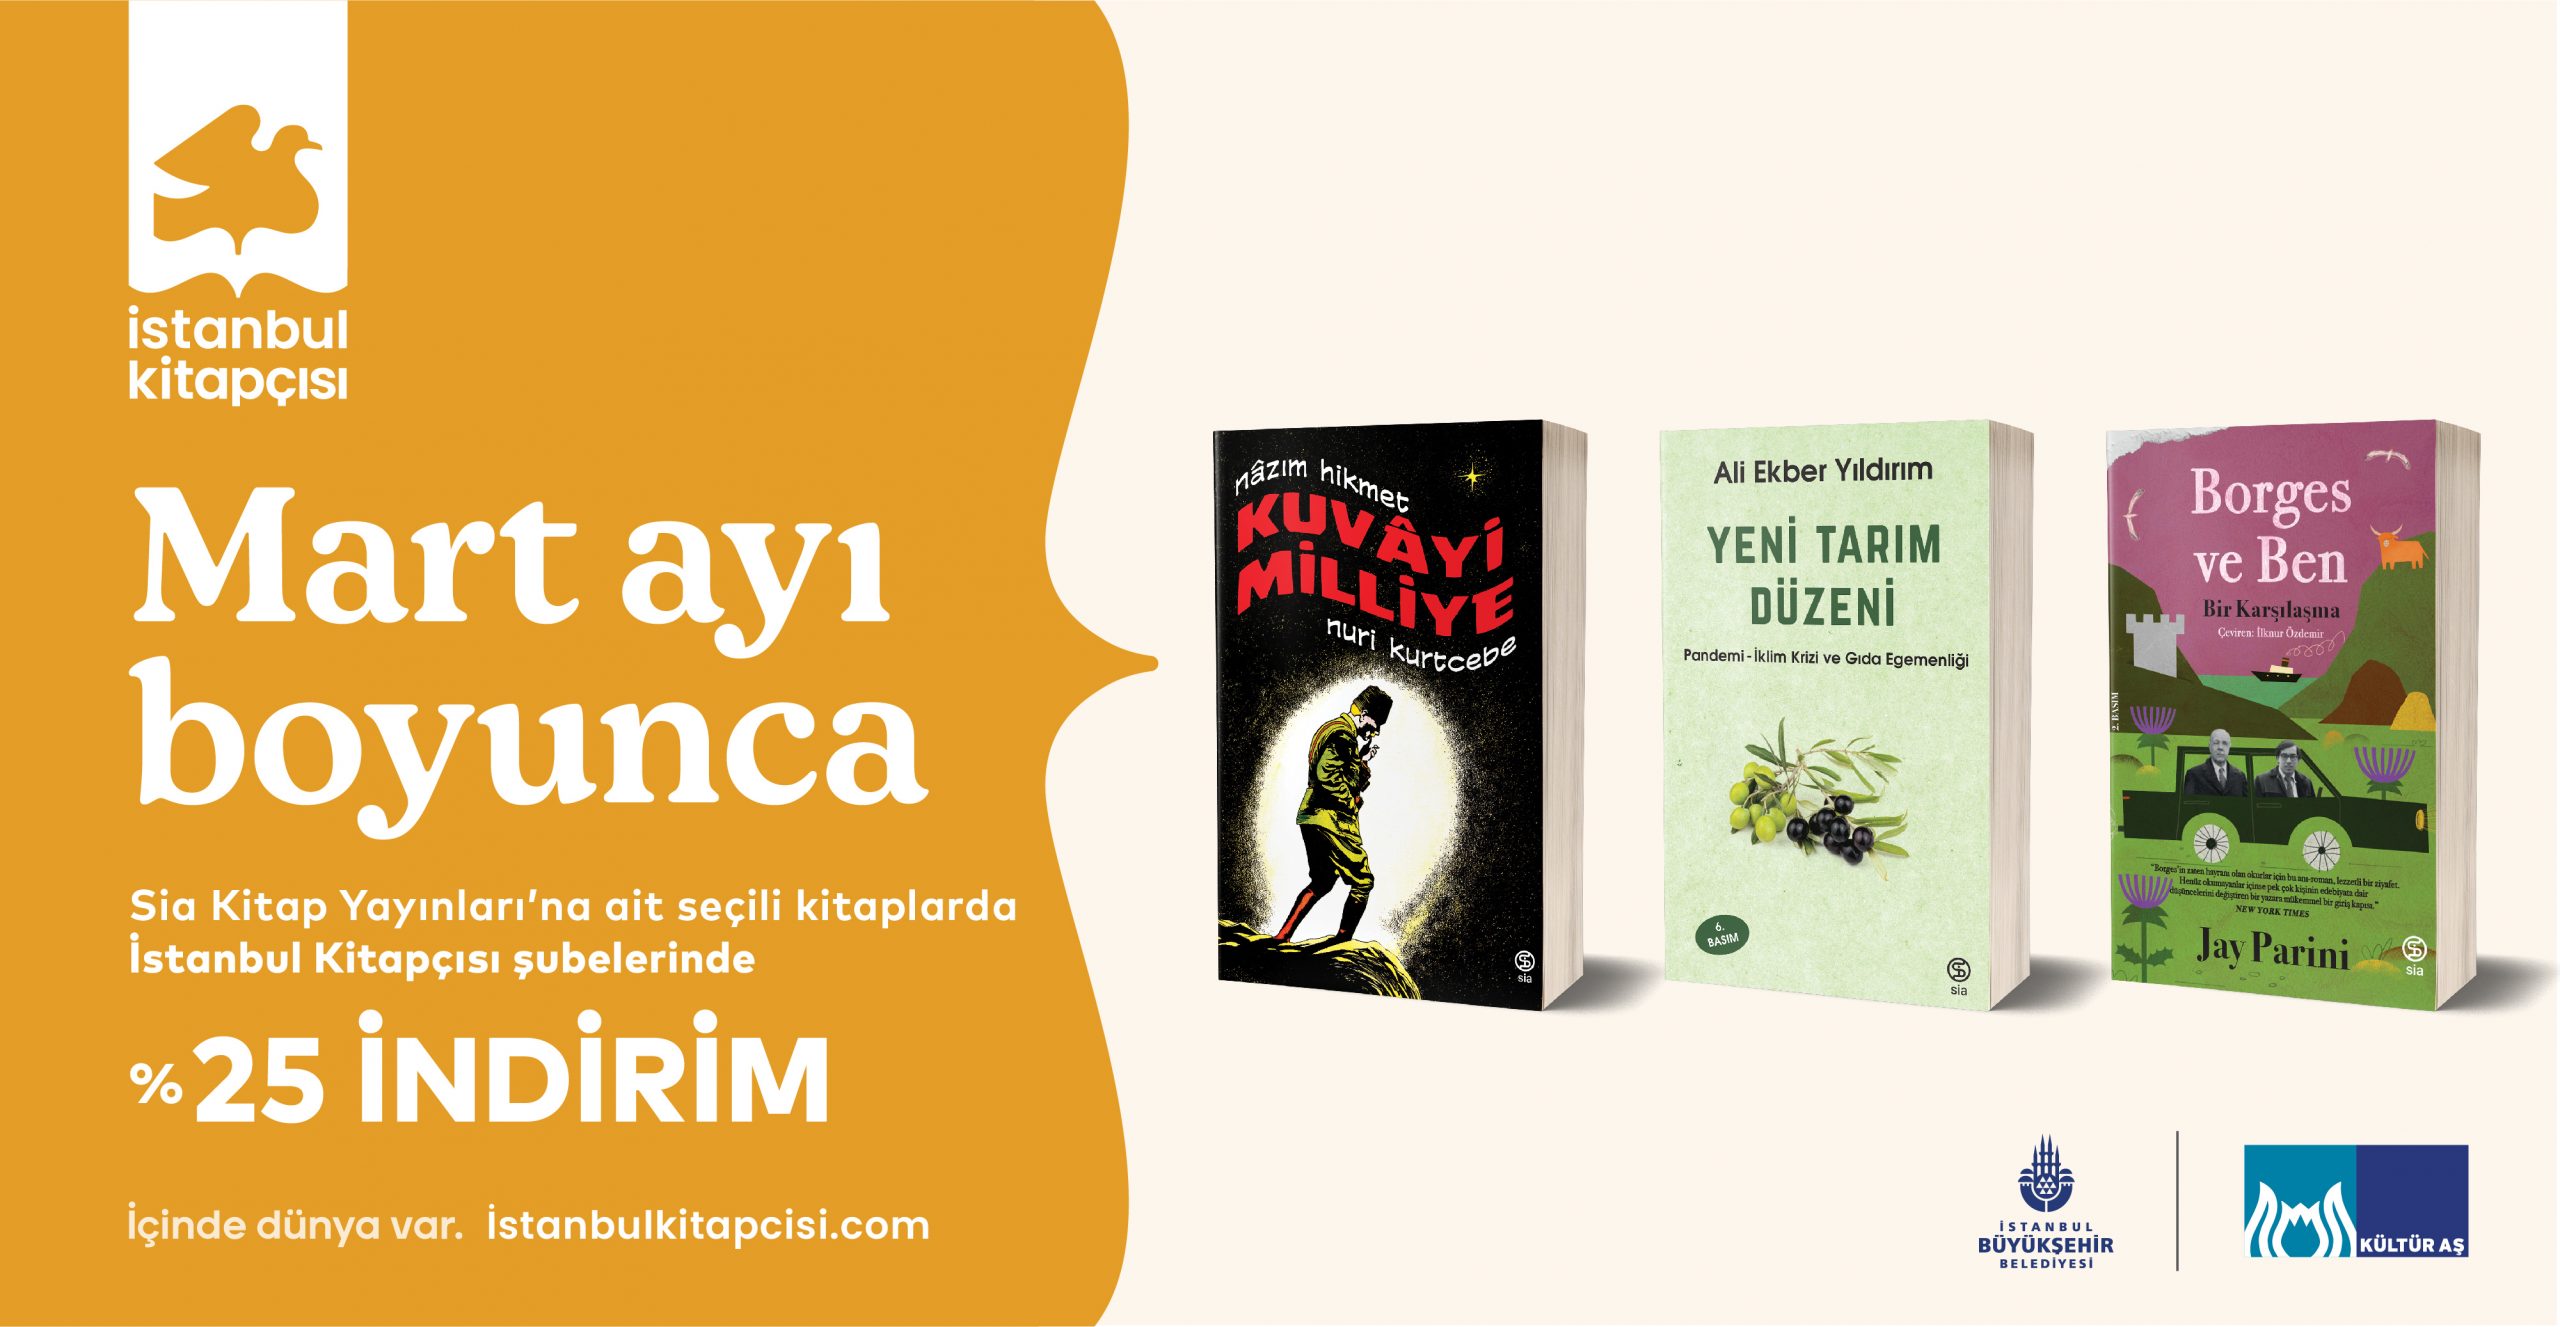 Sia Kitap’ın seçili yayınları İstanbul Kitapçısı şubelerinde %25 indirimli!